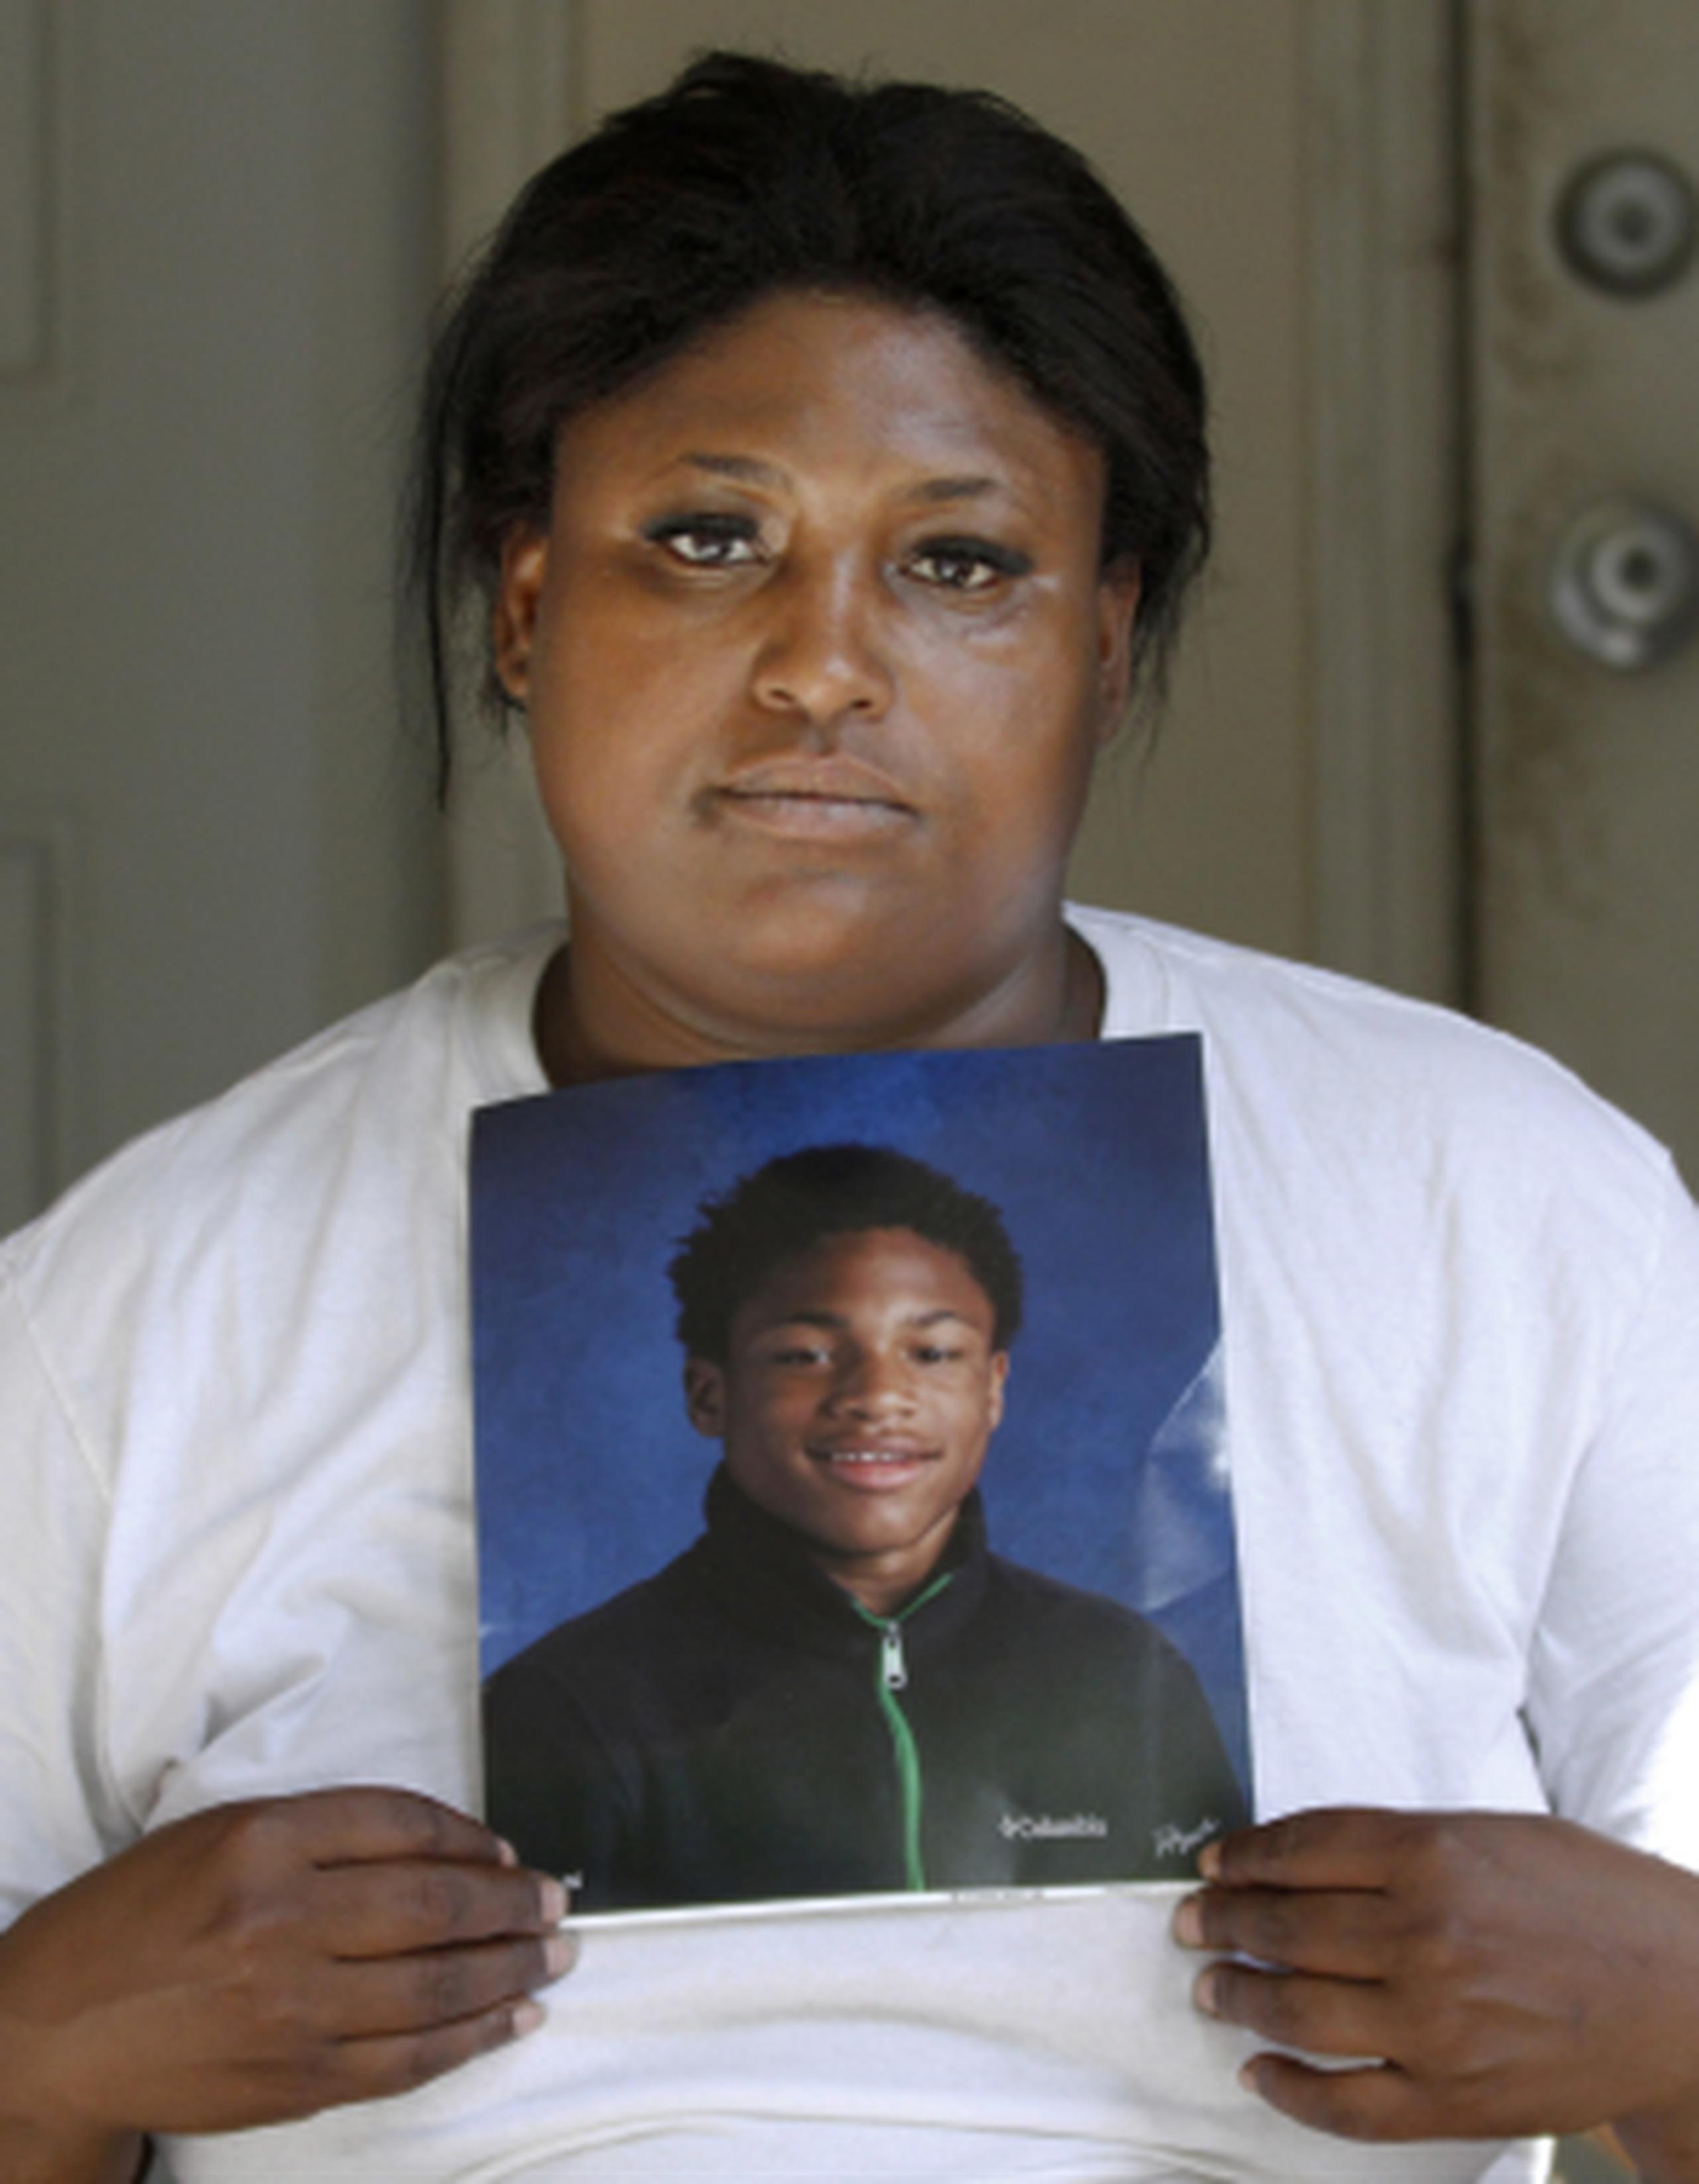 Monique Causey muestra un retrato de su hijo de 14 años, Malik Causey, quien murió baleado a solo unas cuadras de su casa. (AP/Tae-Gyun Kim)